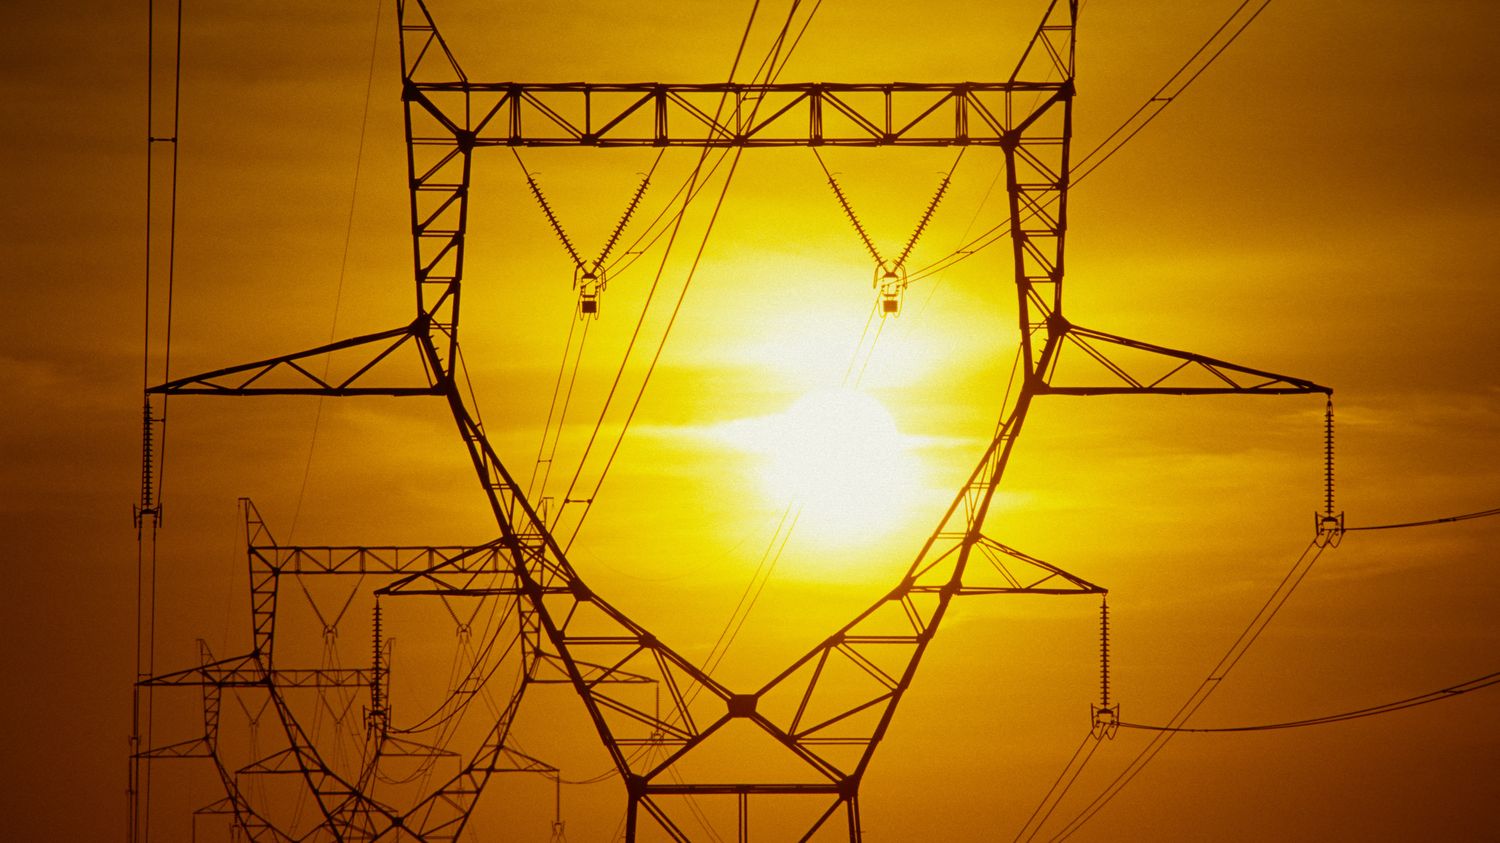 Crise énergétique : comment des fournisseurs d'électricité proposent de récompenser les clients les plus sobres cet hiver - franceinfo